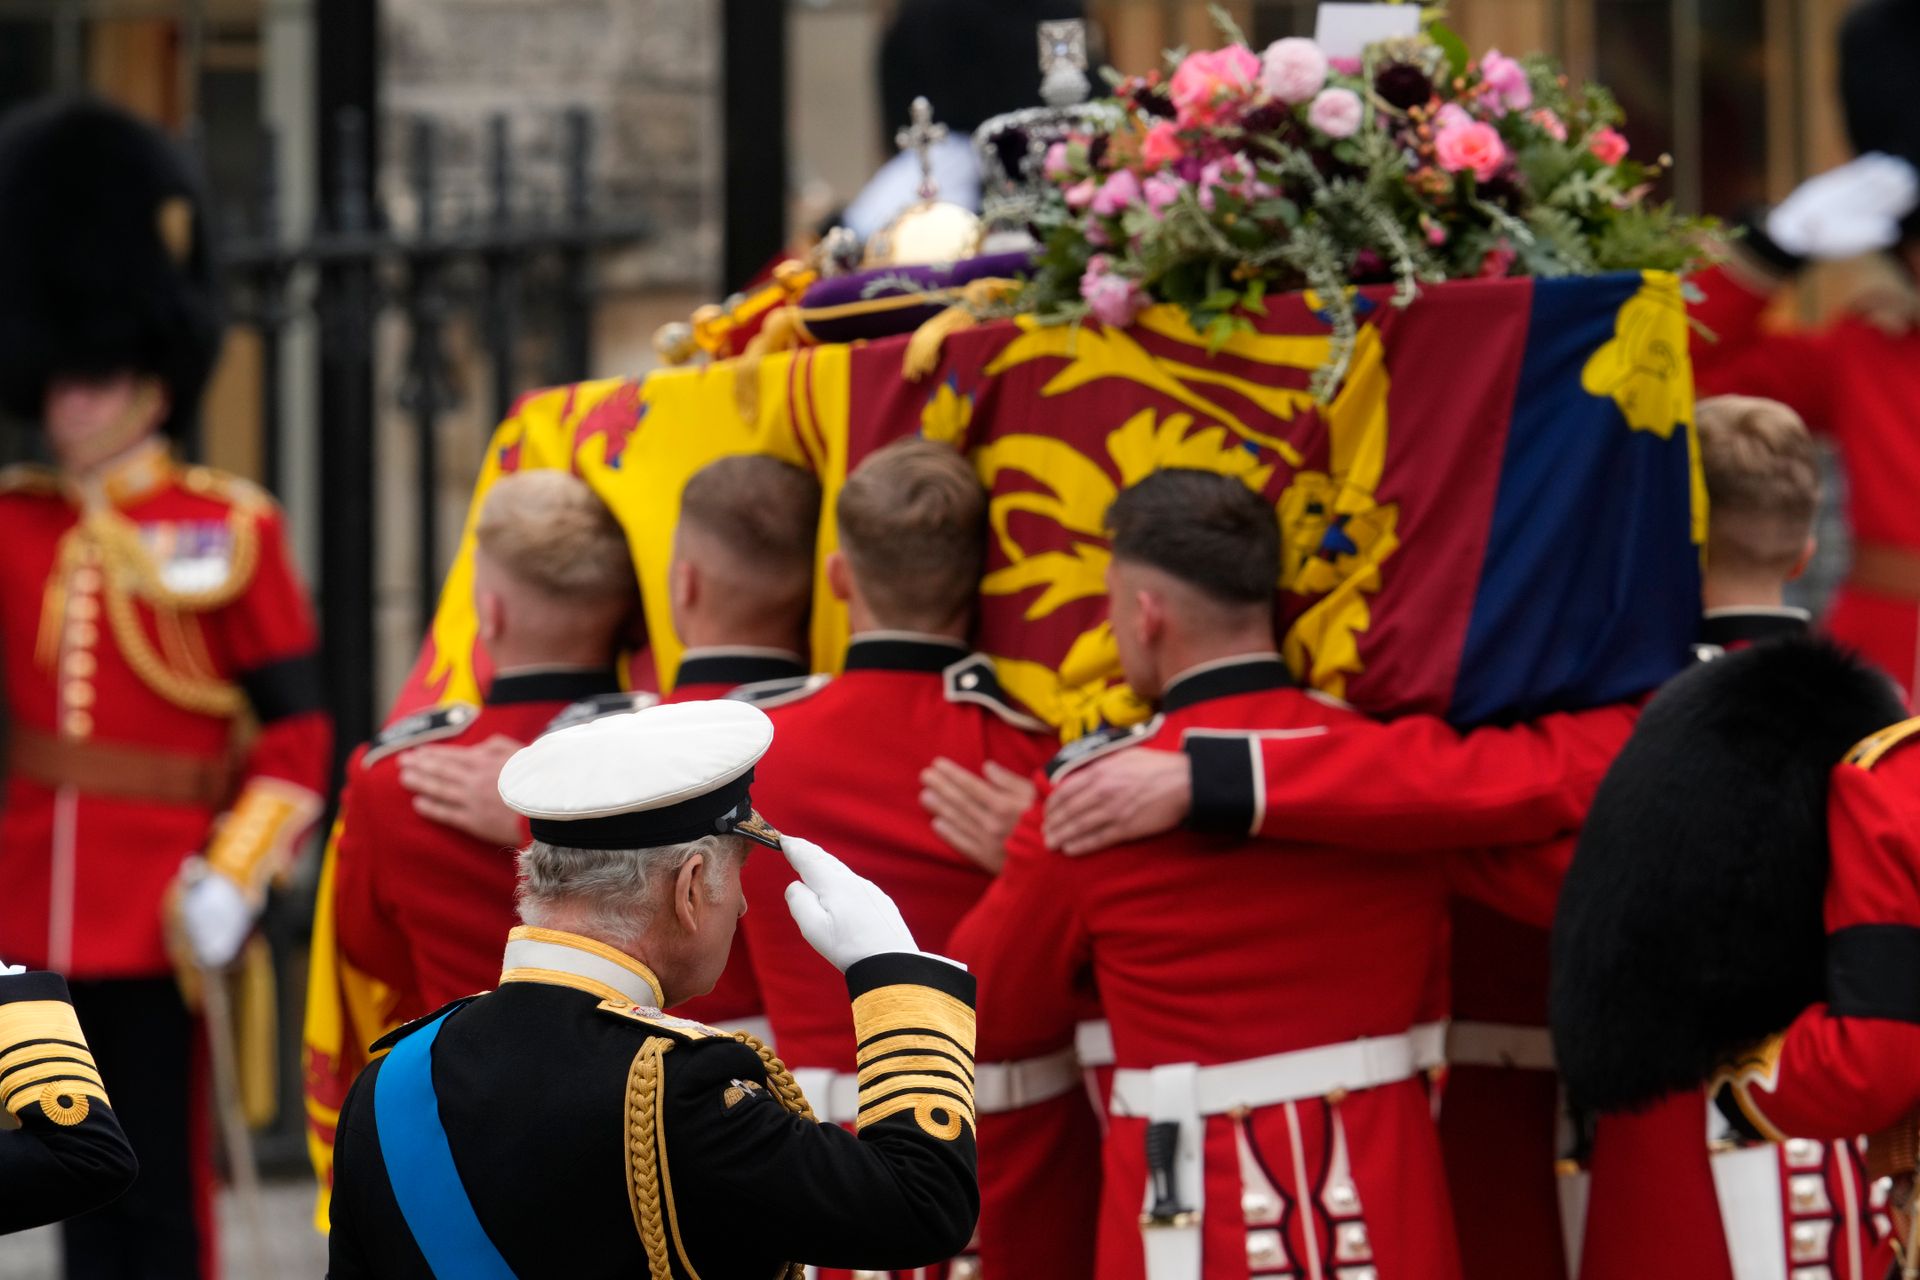 Åtte menn med røde jakker bærer en kiste som er dekket av et flagg med et slags symbol på, i rødt, gult og blått, mens en mann i forgrunnen hilser mot kisten, og oppå kisten ligger det blomster og en krone. 